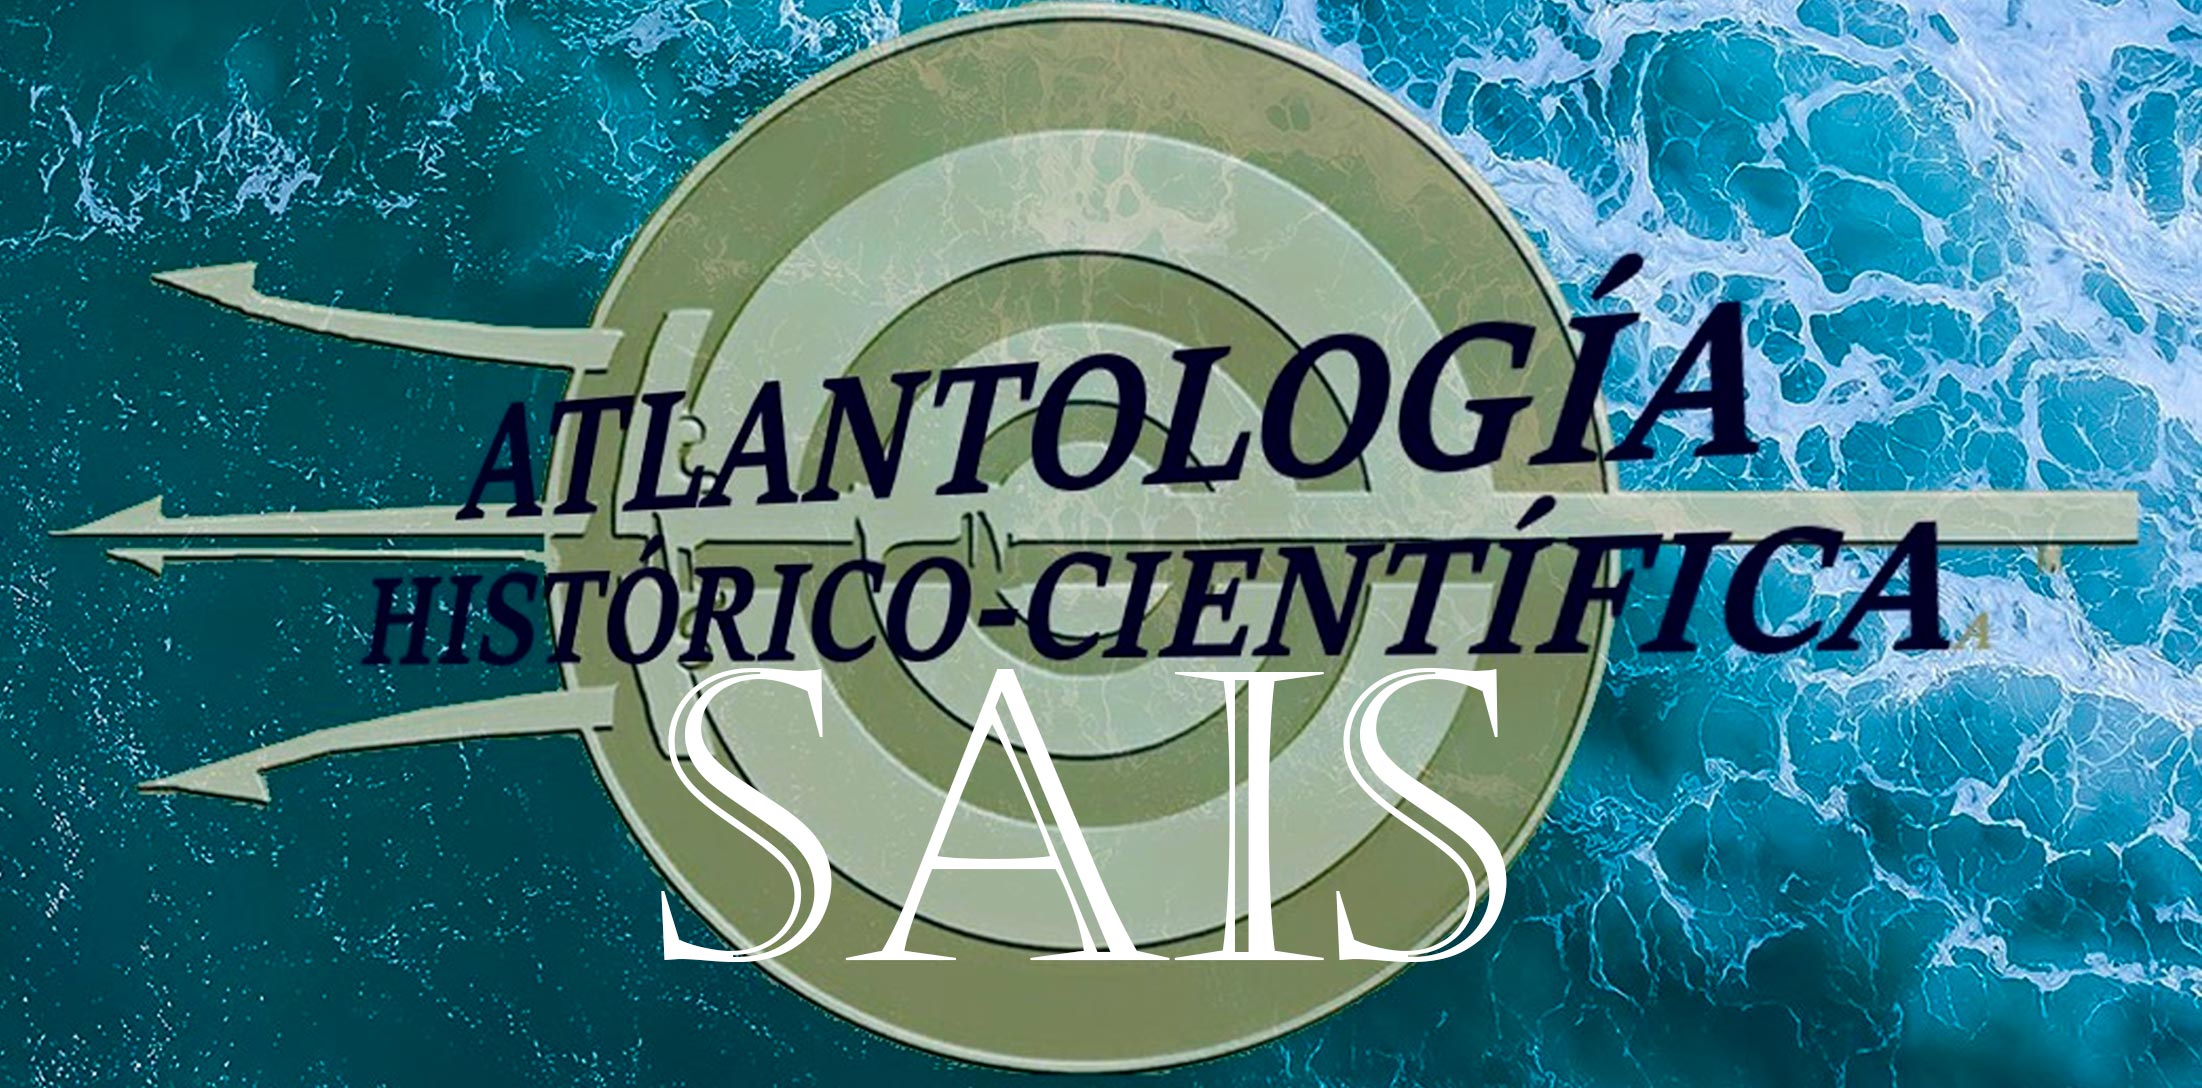  Sociedad Internacional de Atlantología Científica